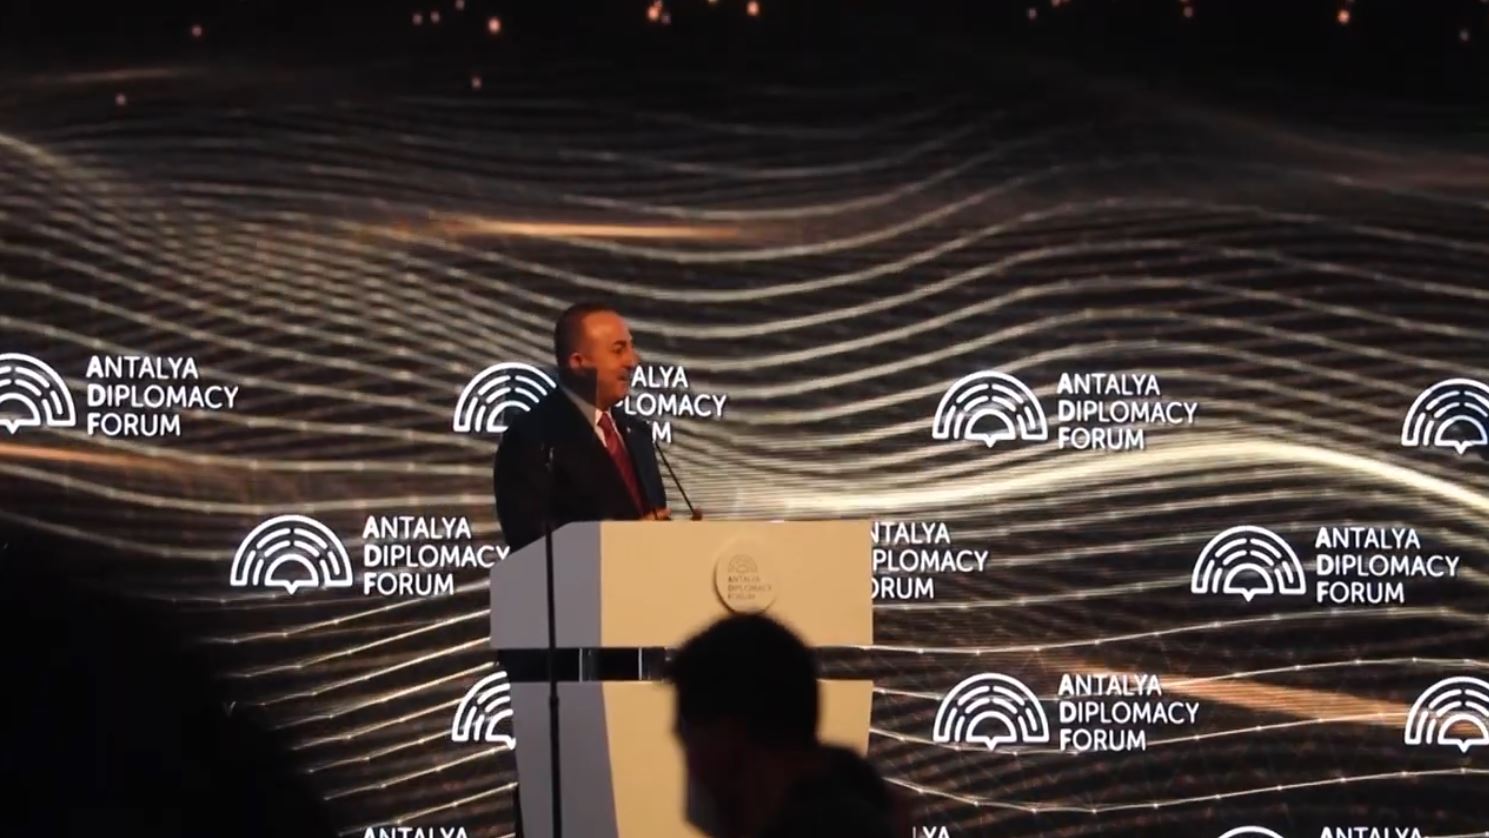 Turquie la ministre d'Etat Kandia Camara participe au Forum diplomatique d'Antalya_2022_RCI_CIV_5